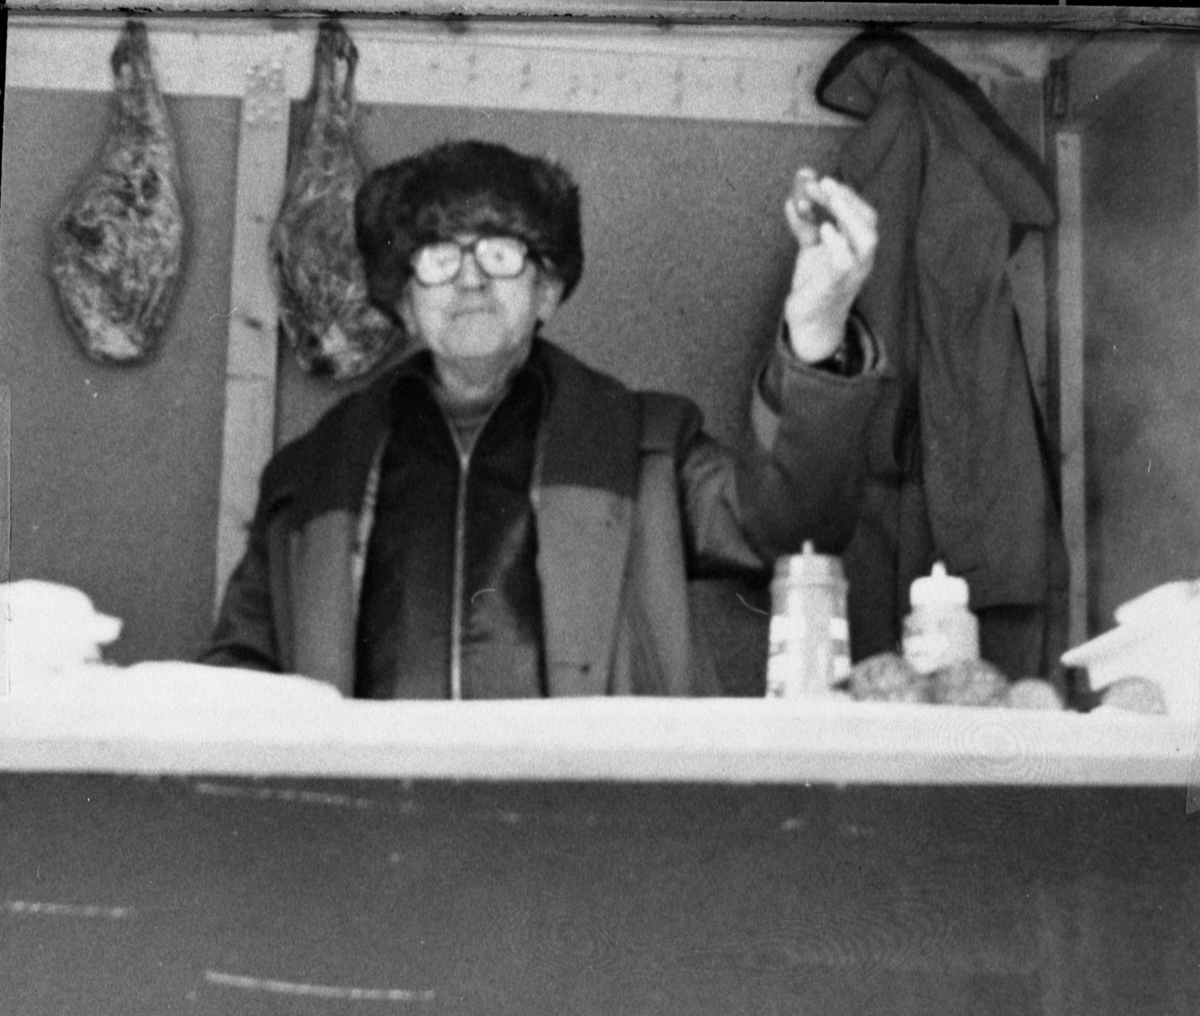 Arne A. Selboe, "Kinken", som handelsmann i martnasbod i gata under rørosmartnan